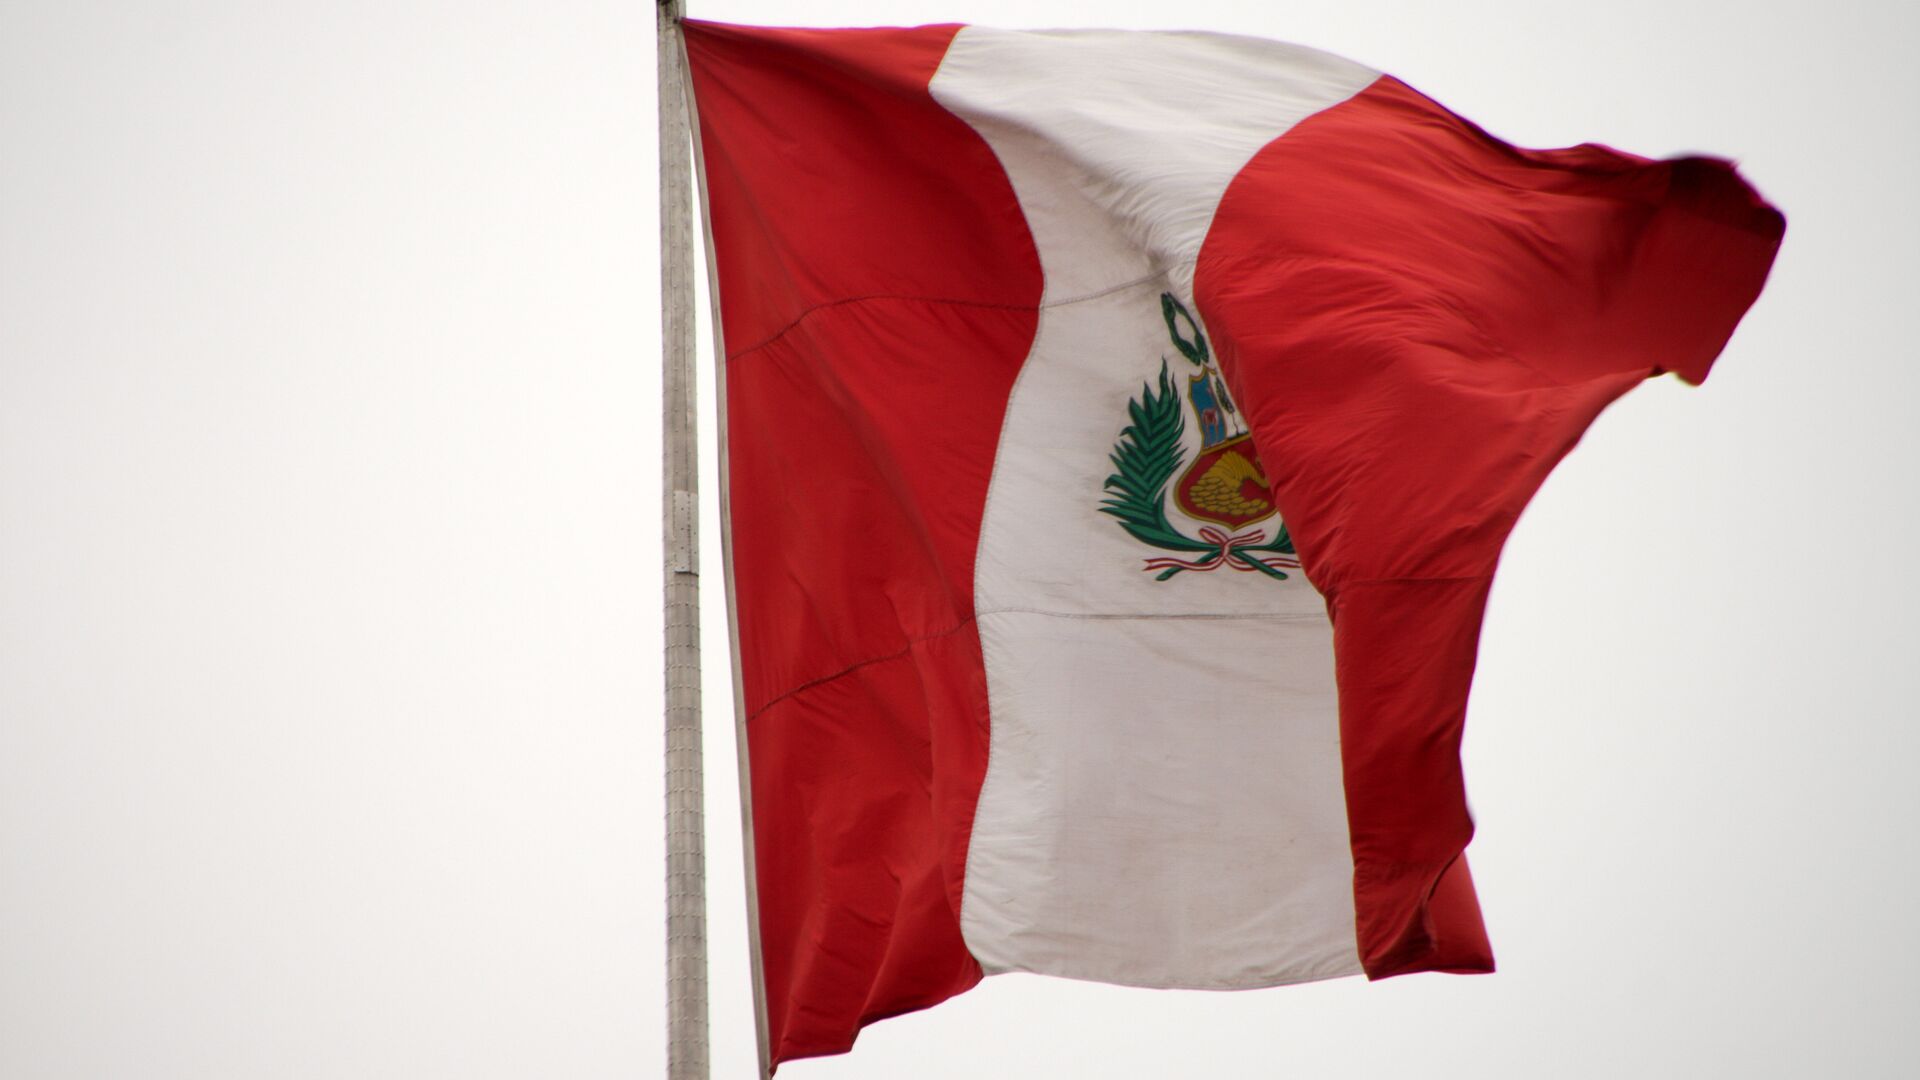 La bandera de Perú - Sputnik Mundo, 1920, 30.11.2021